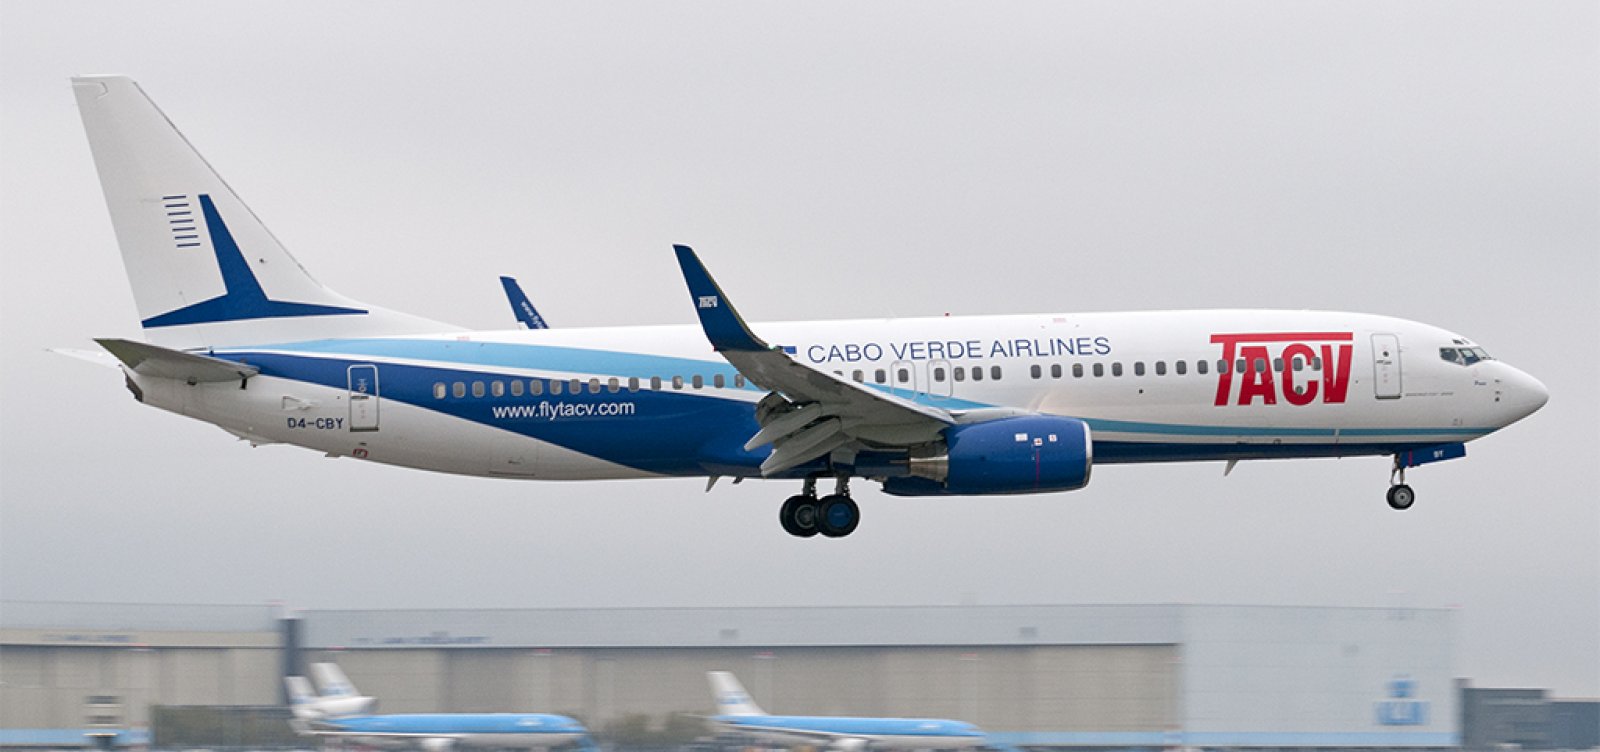 'Salvador vai encontrar parte de suas raízes', diz diretor geral da Cabo Verde Airlines